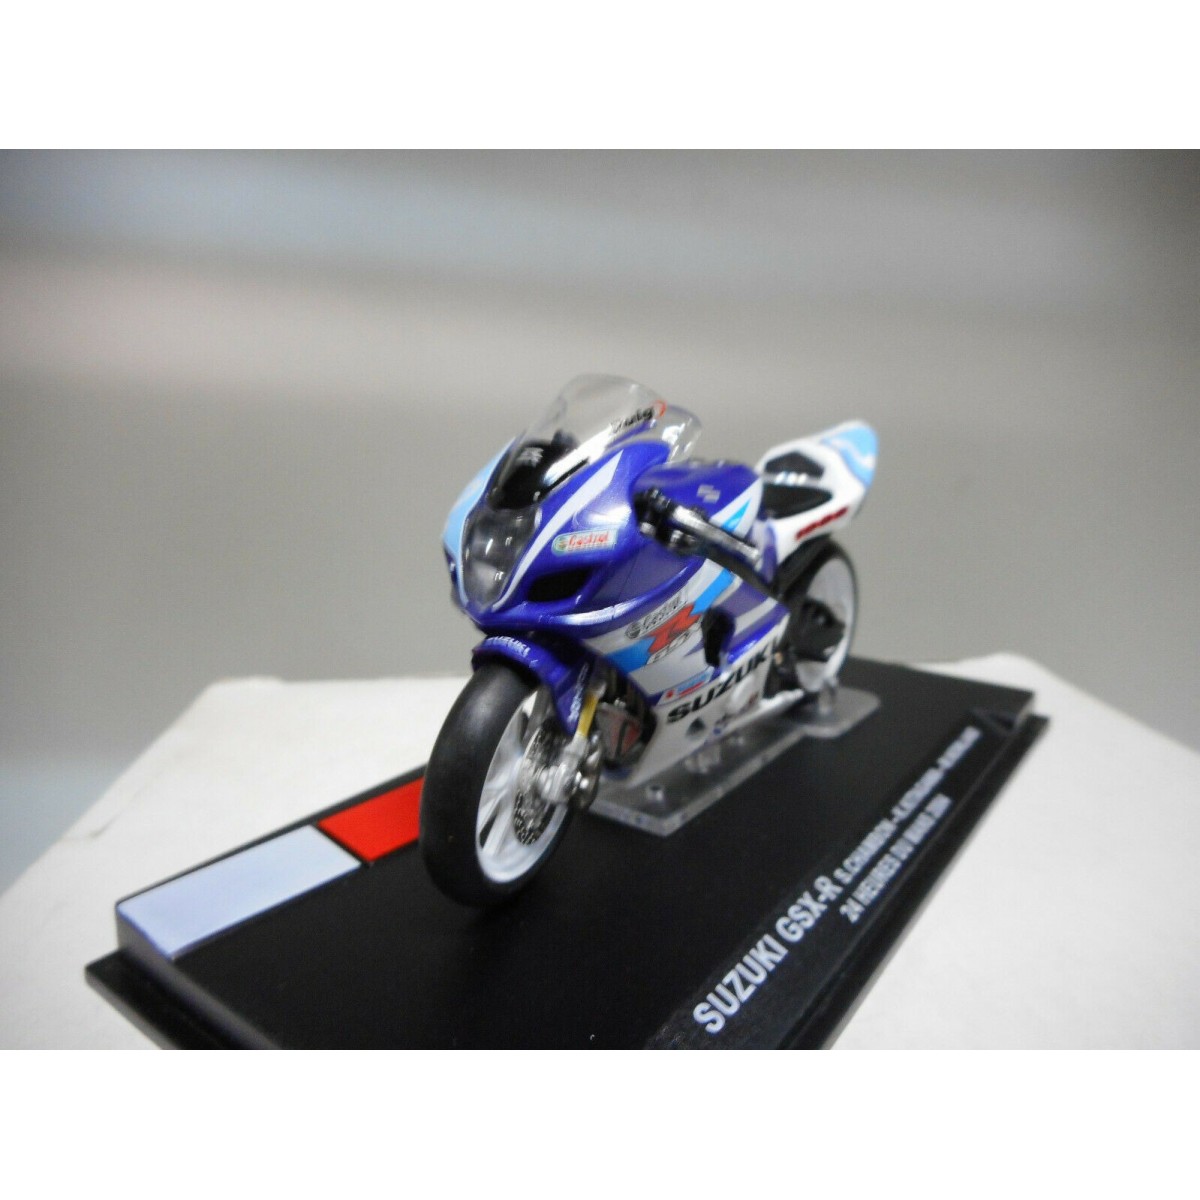 Suzuki GSX-R === Modell 1:24 === Motorcycle === Le Mans 2004